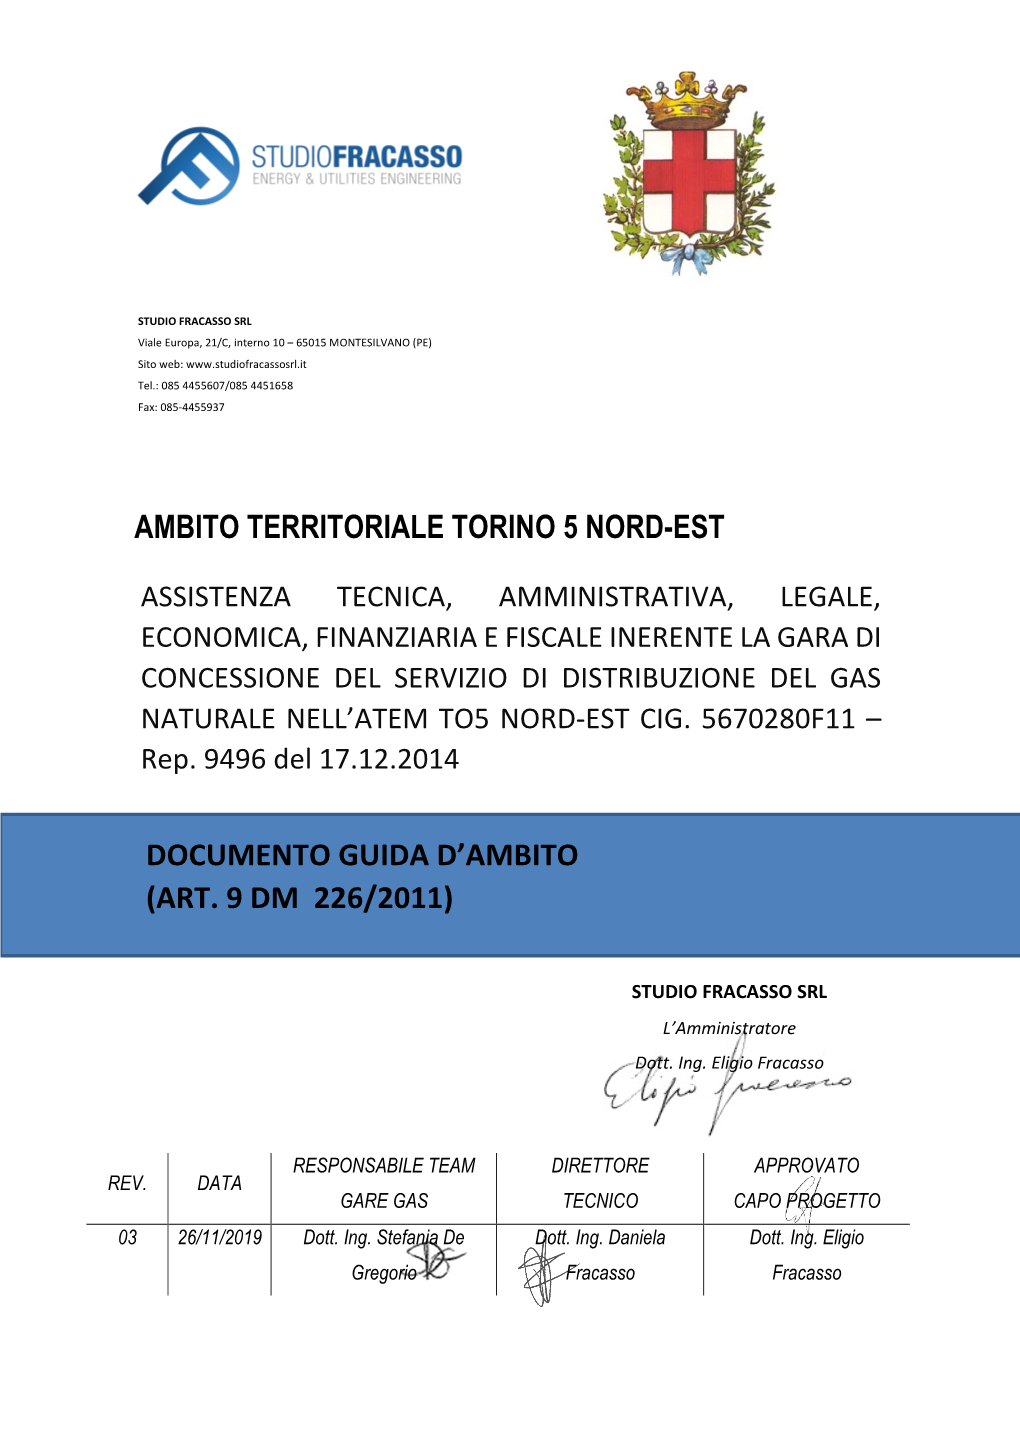 Ambito Territoriale Torino 5 Nord-Est Documento Guida